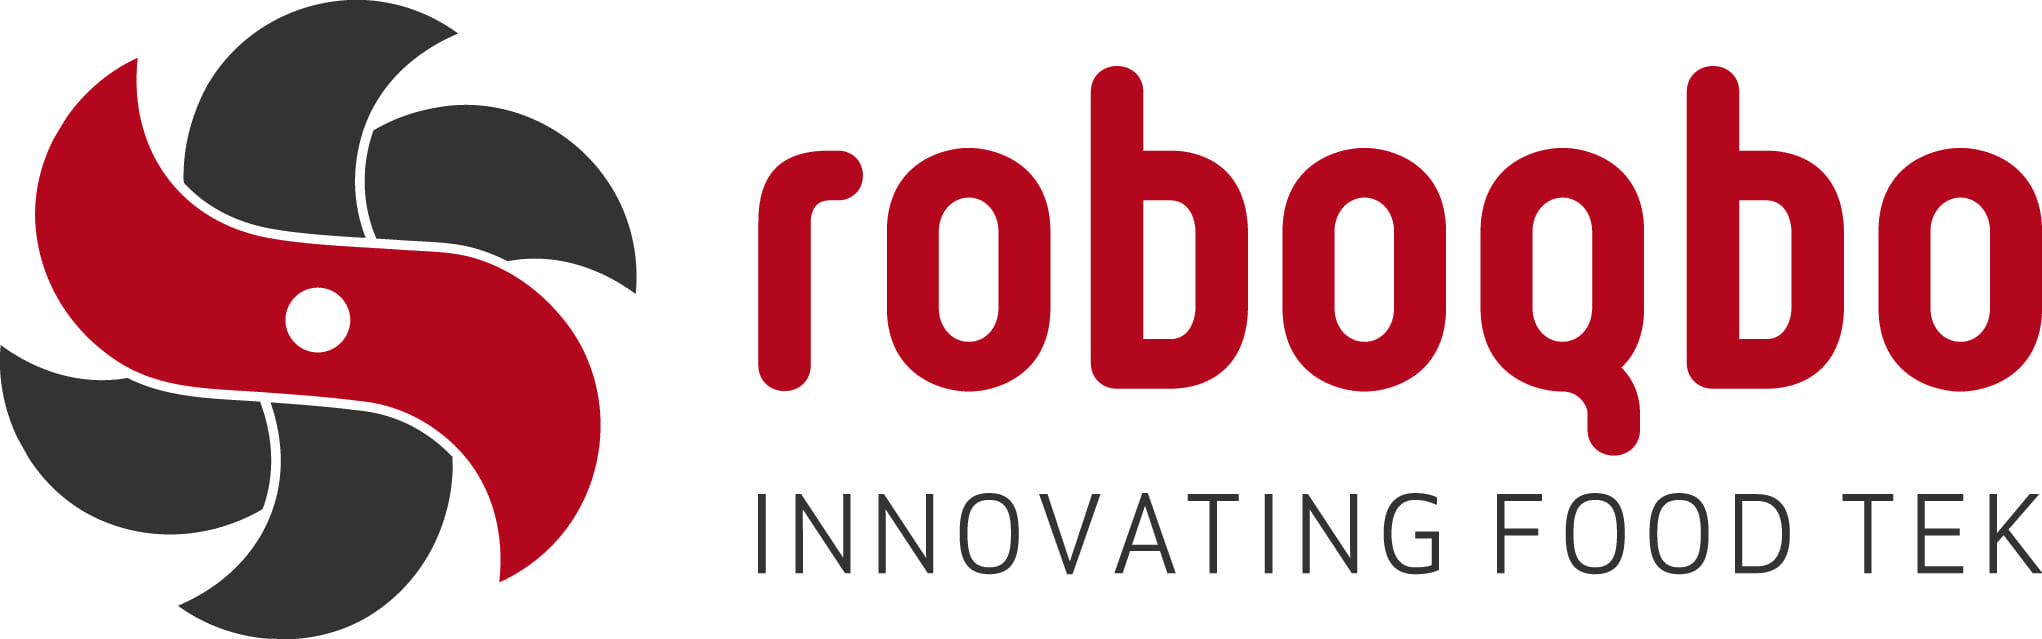 logo roboqbo